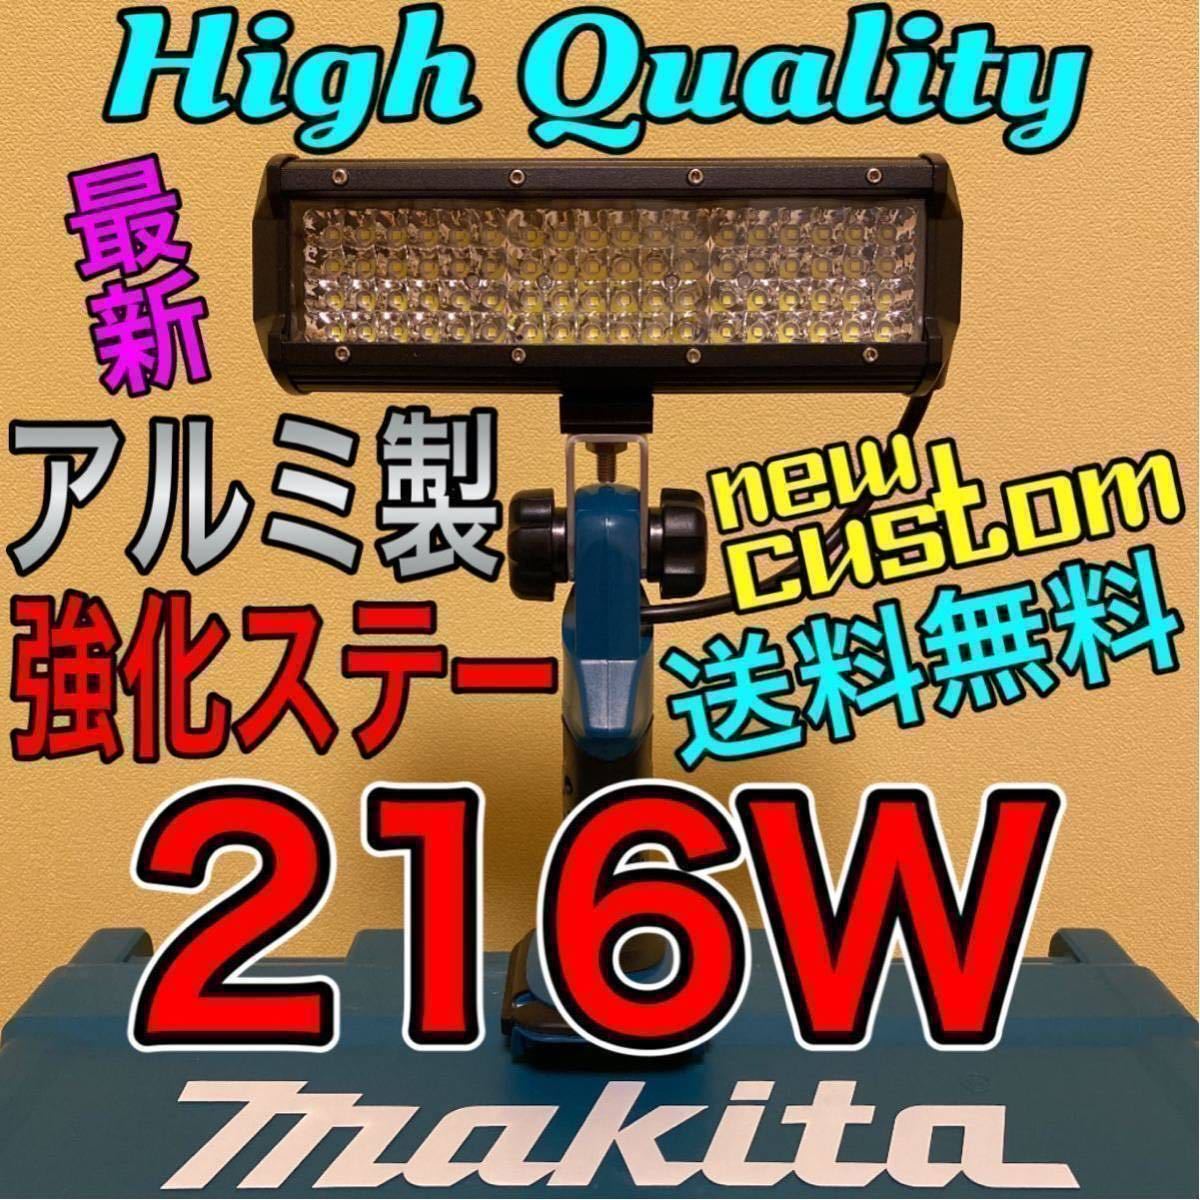 マキタ makita 216W LED ワークライト フラッシュライト 作業灯 集魚灯 投光器 照明 釣り 充電式 バッテリー 爆光 大光量 18V 14.4V ML